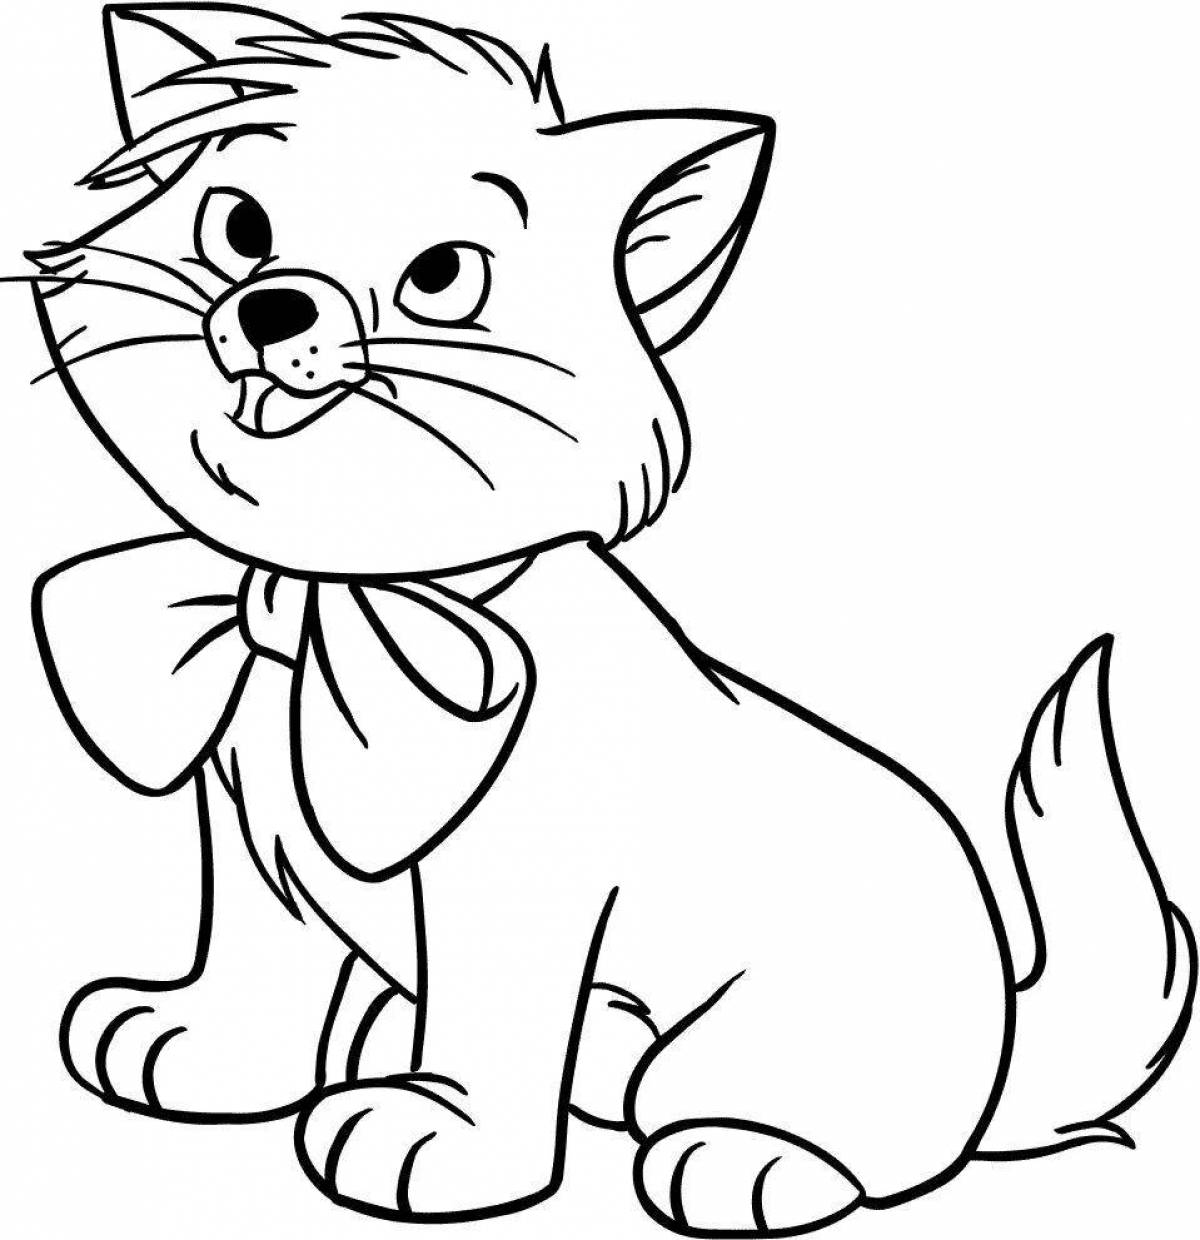 Забавная раскраска кошка для детей 4-5 лет